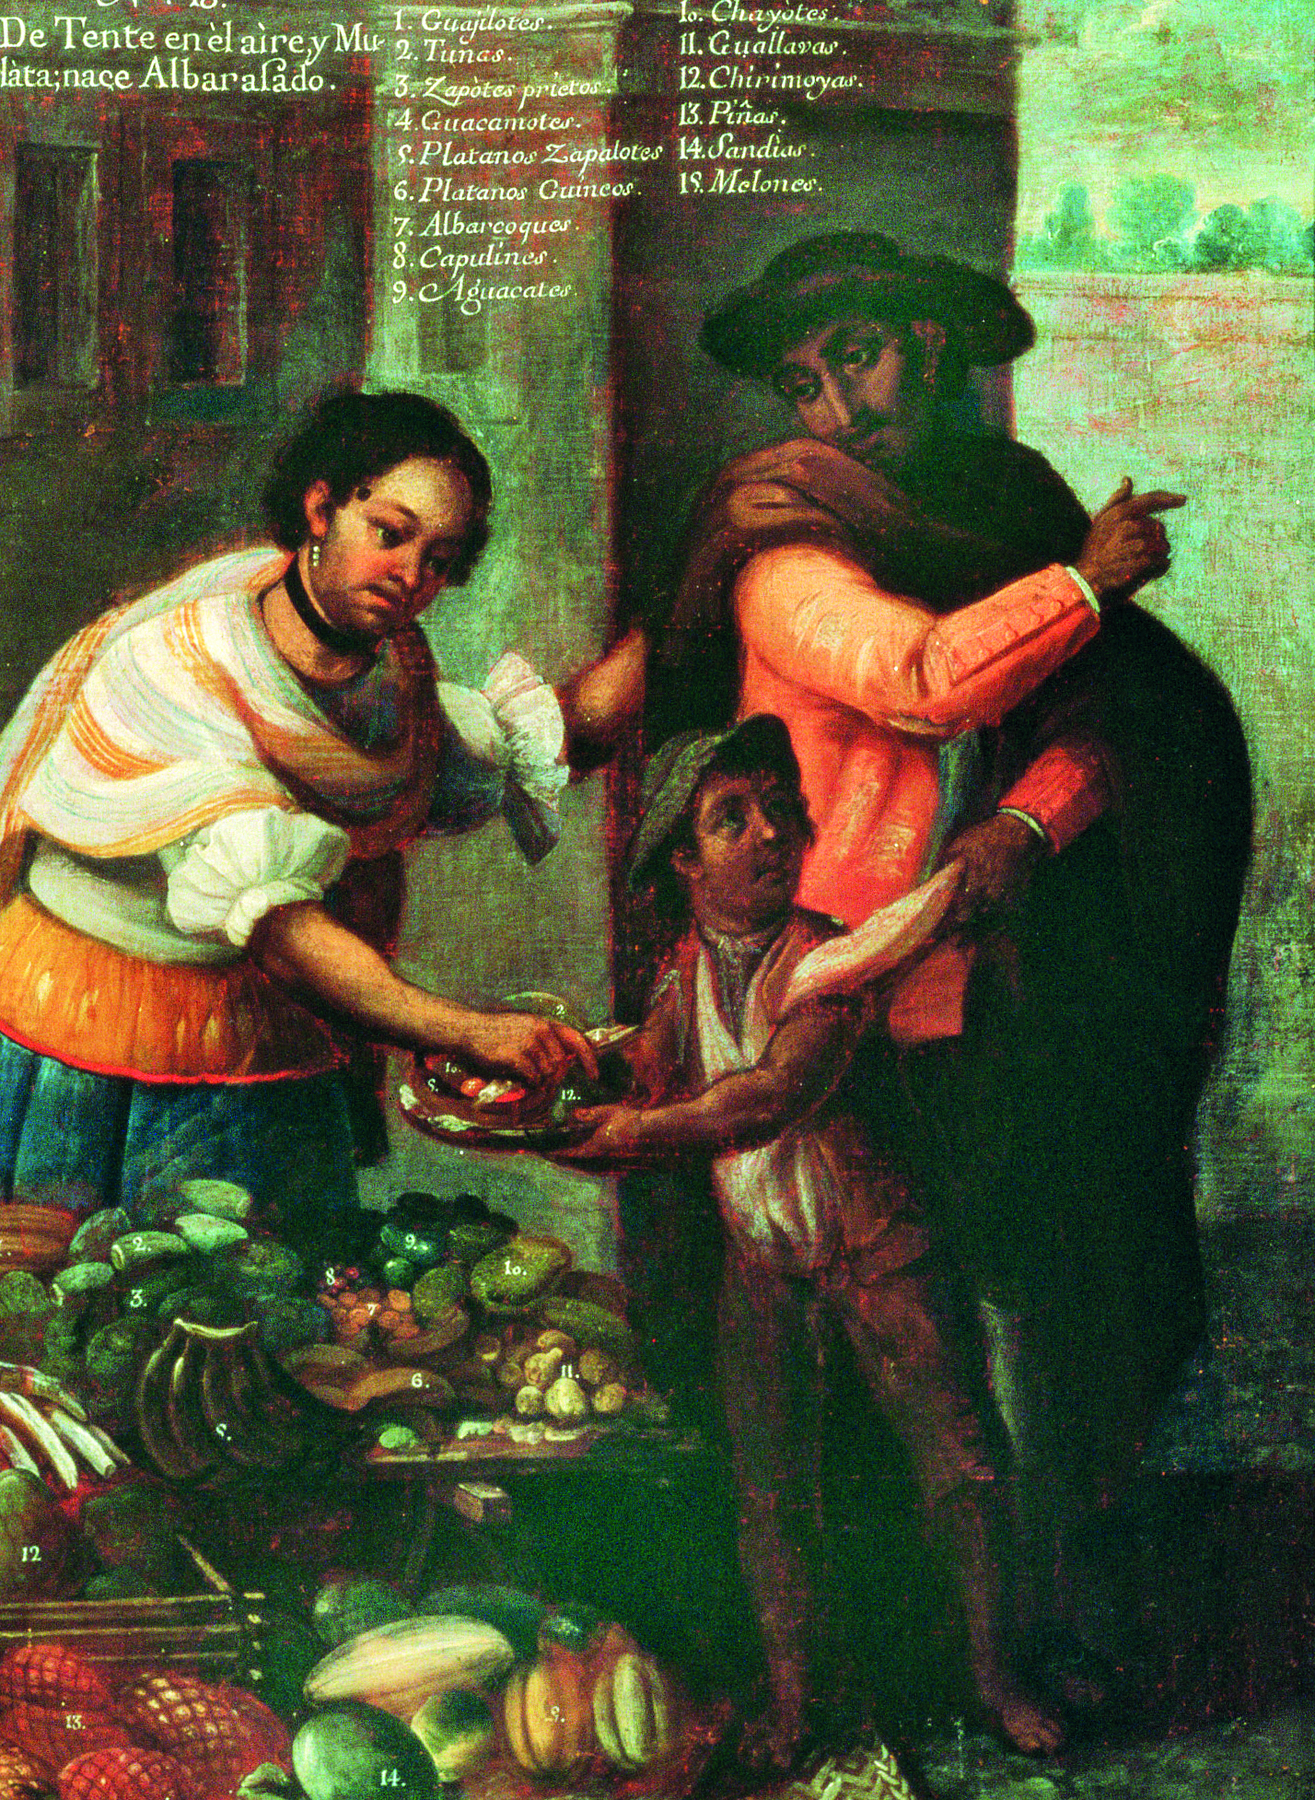 Pintura. Uma criança mestiça segura um prato com frutas que uma mulher branca coloca acompanhados de um homem indígena. Em primeiro plano, uma mesa cheia de frutas.